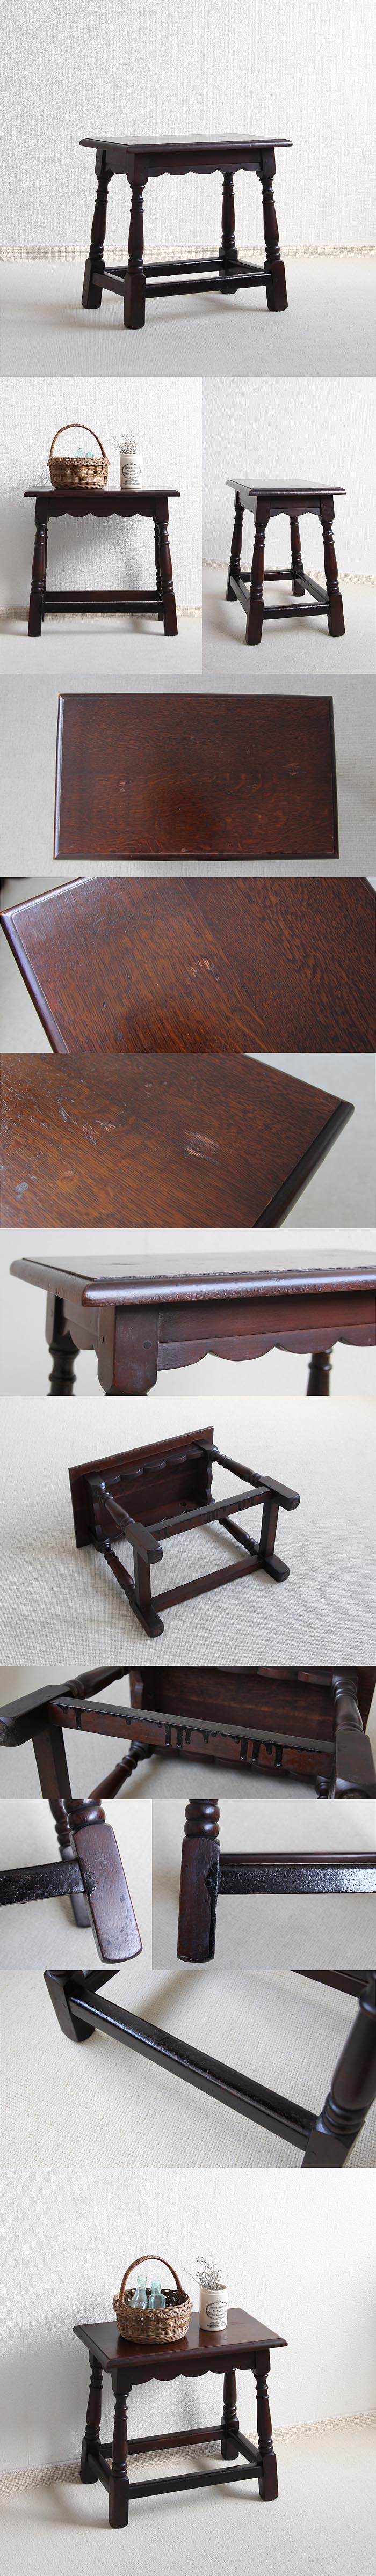 イギリス アンティーク調 サイドテーブル 小さなテーブル オーク 家具「スツールとしての使用可」V-771